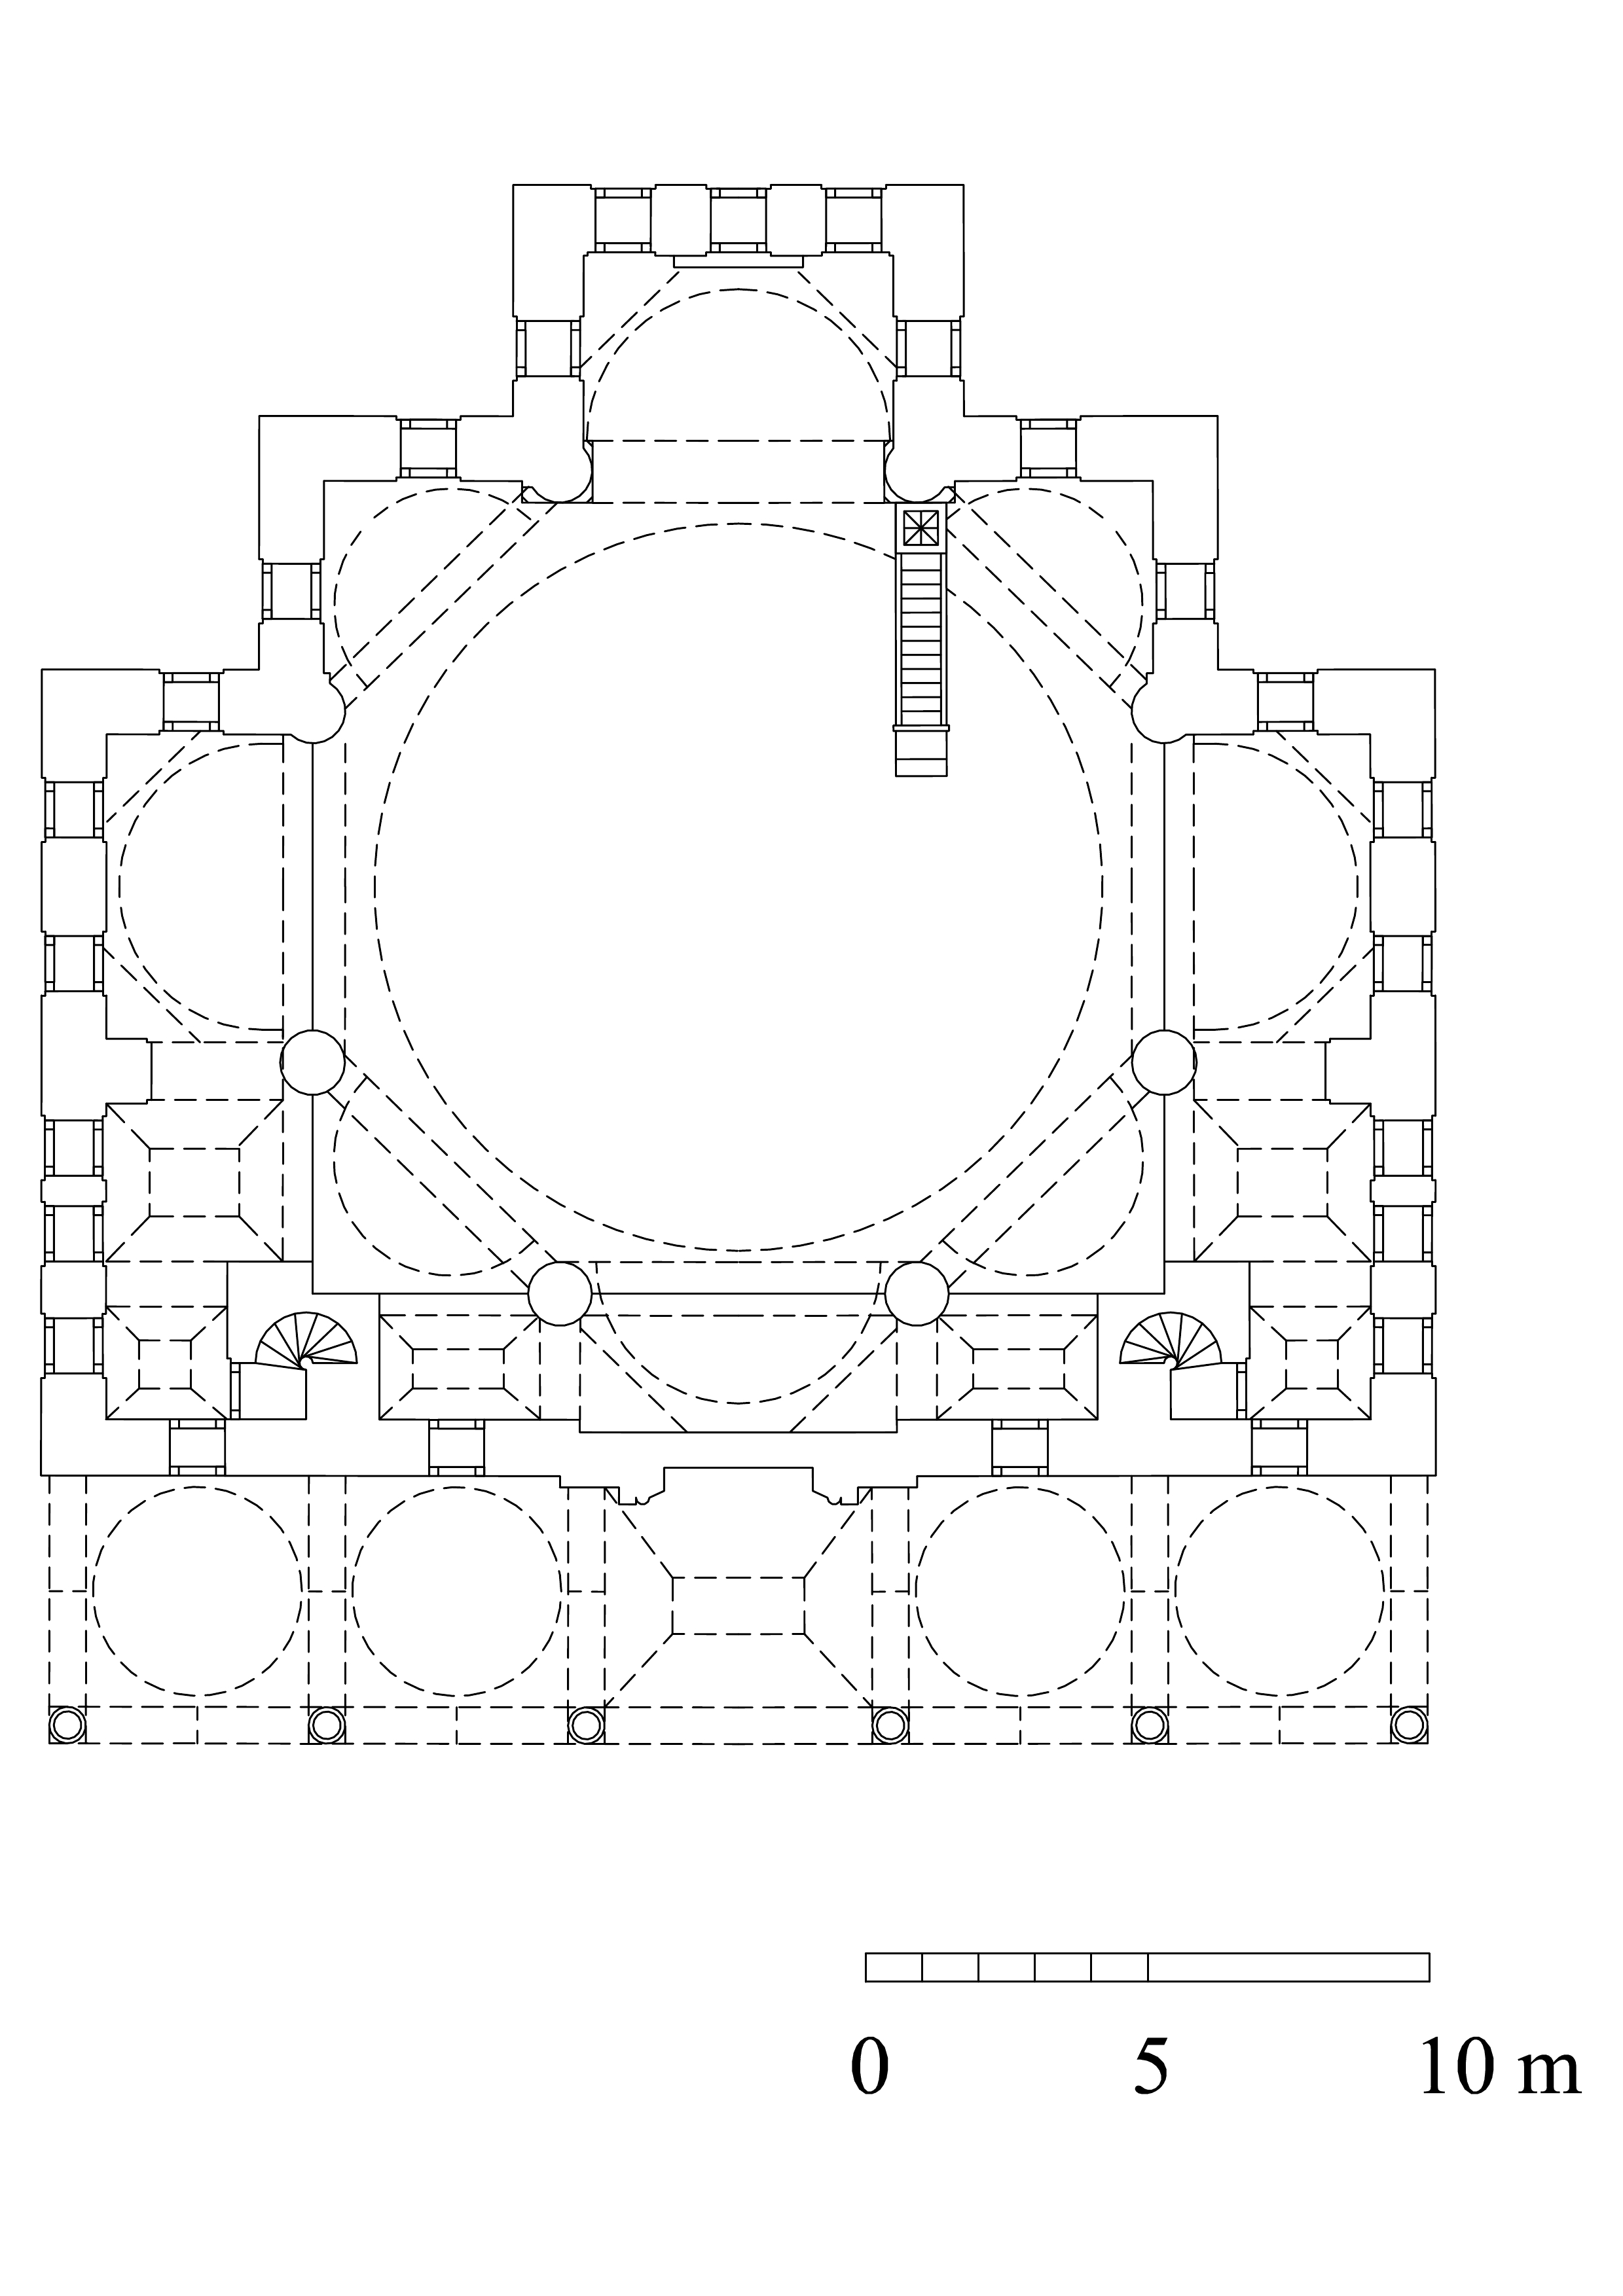 Floor plan of Nisanci Mehmed Pasa Mosque, gallery